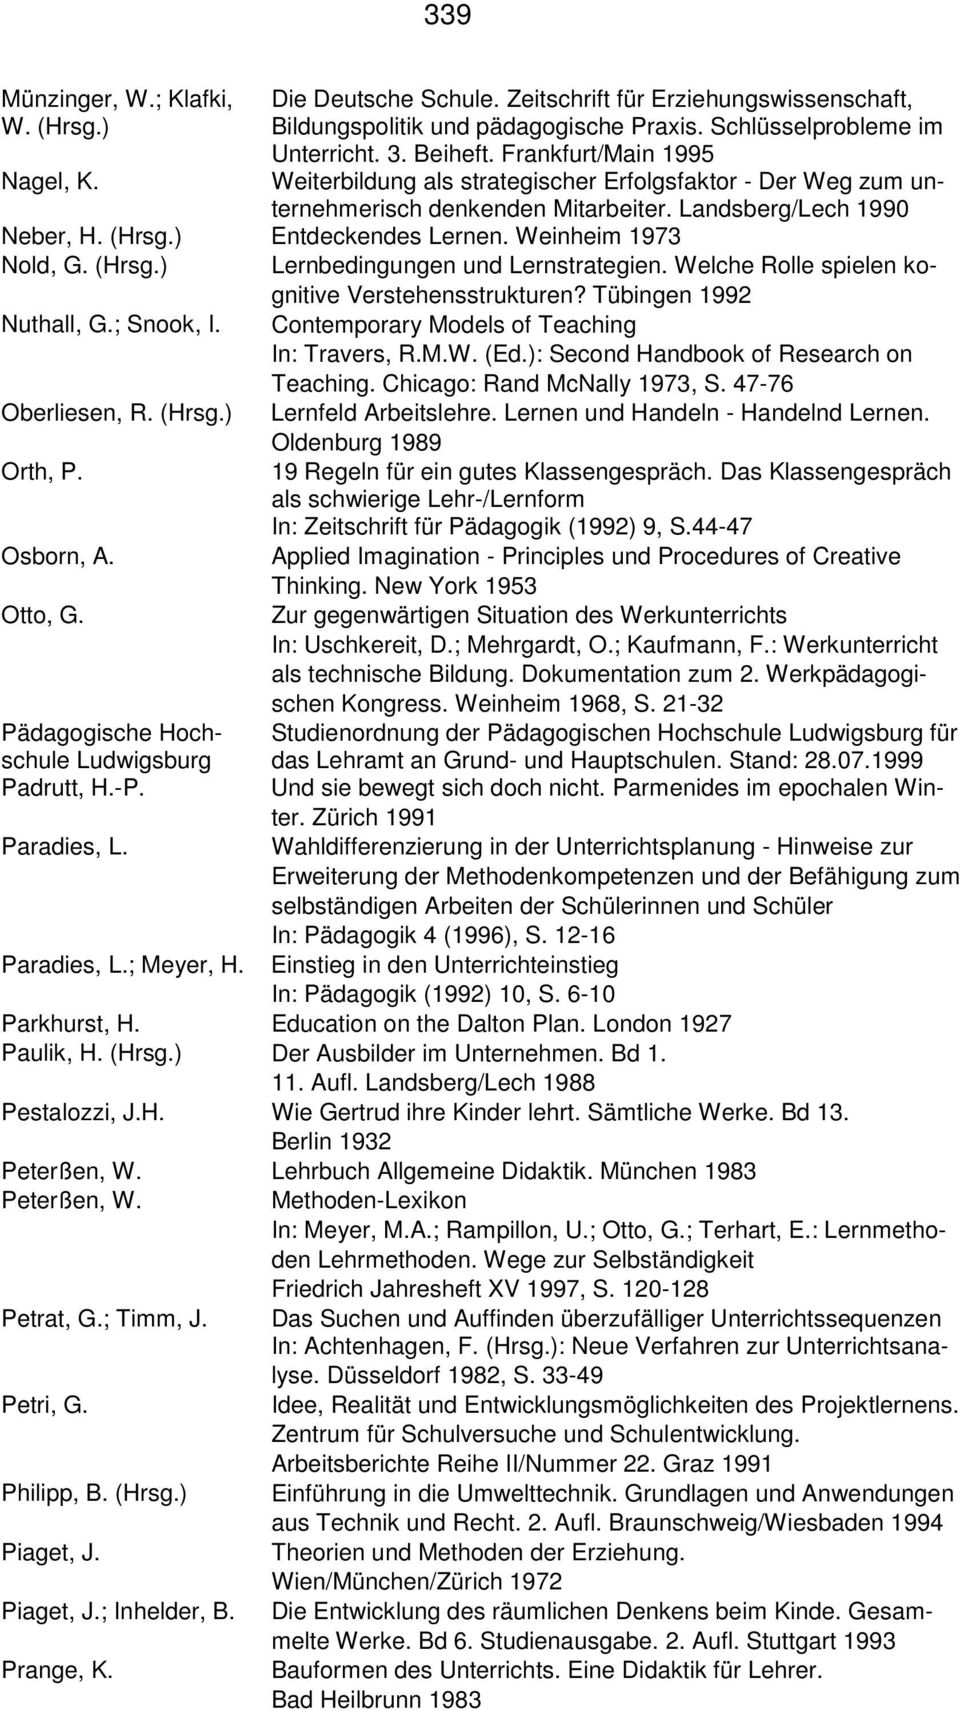 (Hrsg.) Lernbedingungen und Lernstrategien. Welche Rolle spielen kognitive Verstehensstrukturen? Tübingen 1992 Nuthall, G.; Snook, I. Contemporary Models of Teaching In: Travers, R.M.W. (Ed.